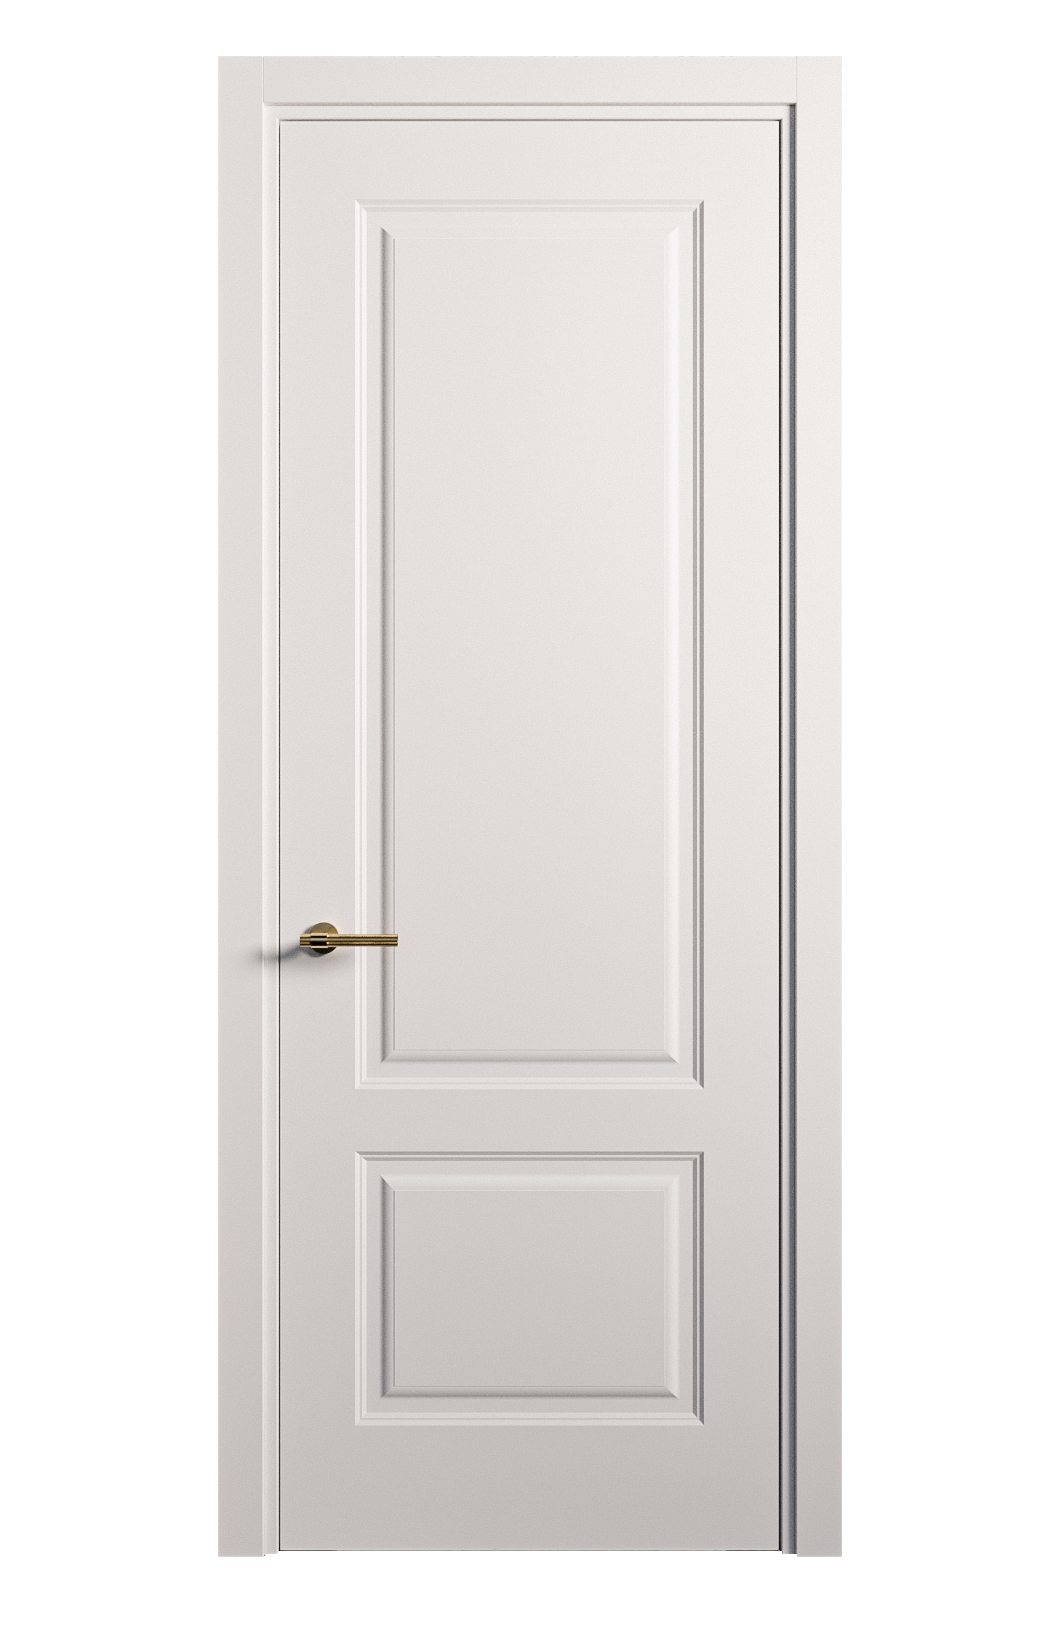 Межкомнатная дверь Вита-1 глухая эмаль ral 9003 26256